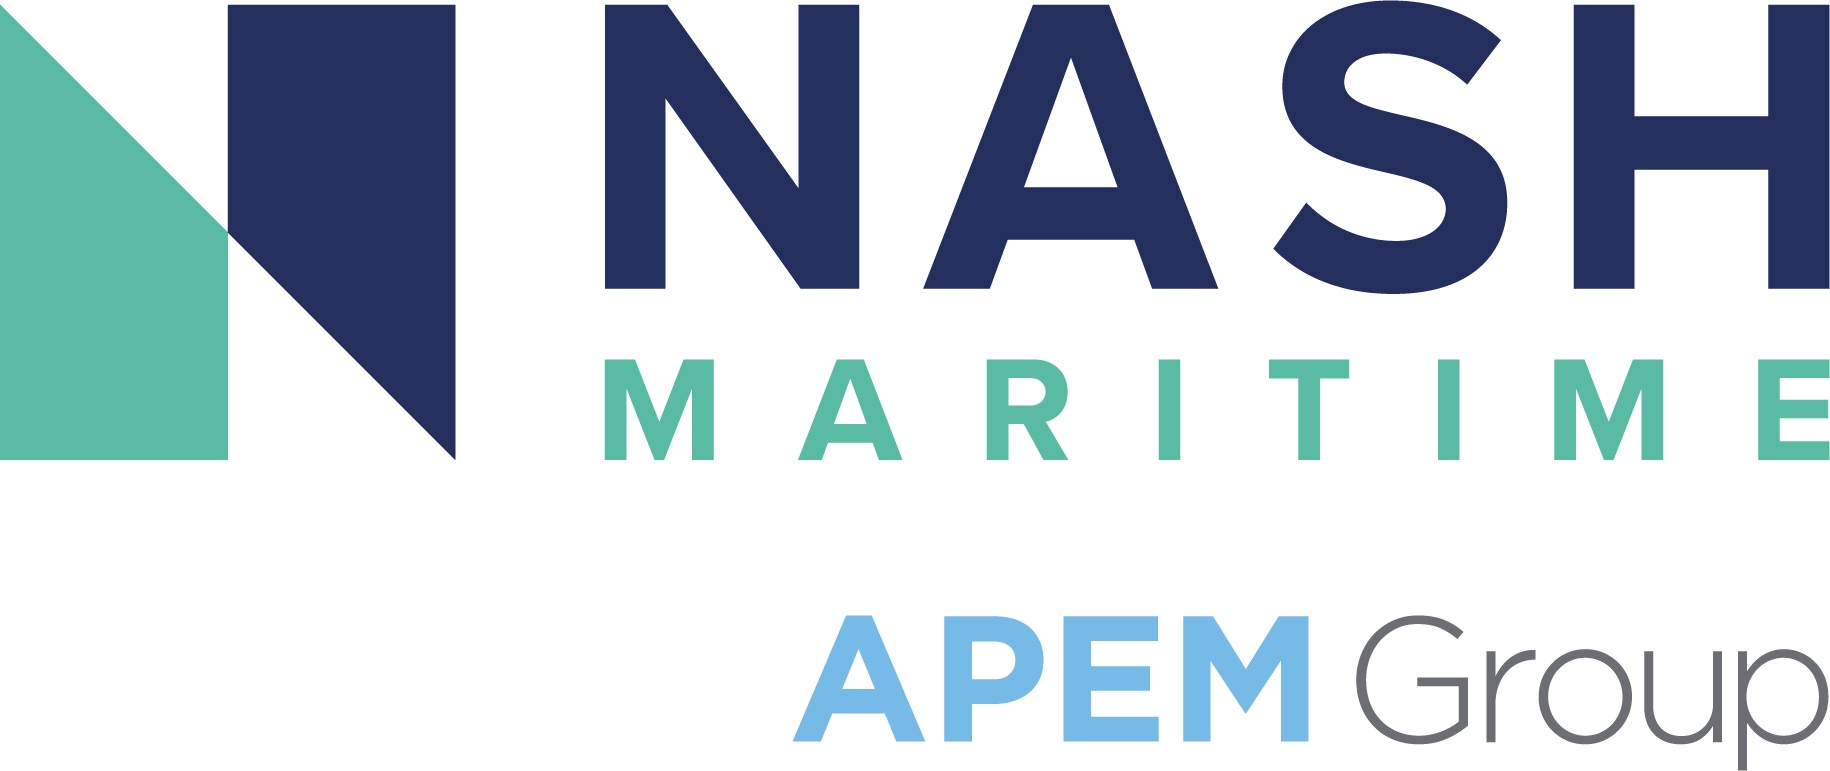 NASH_APEM Group logo_COL.jpg